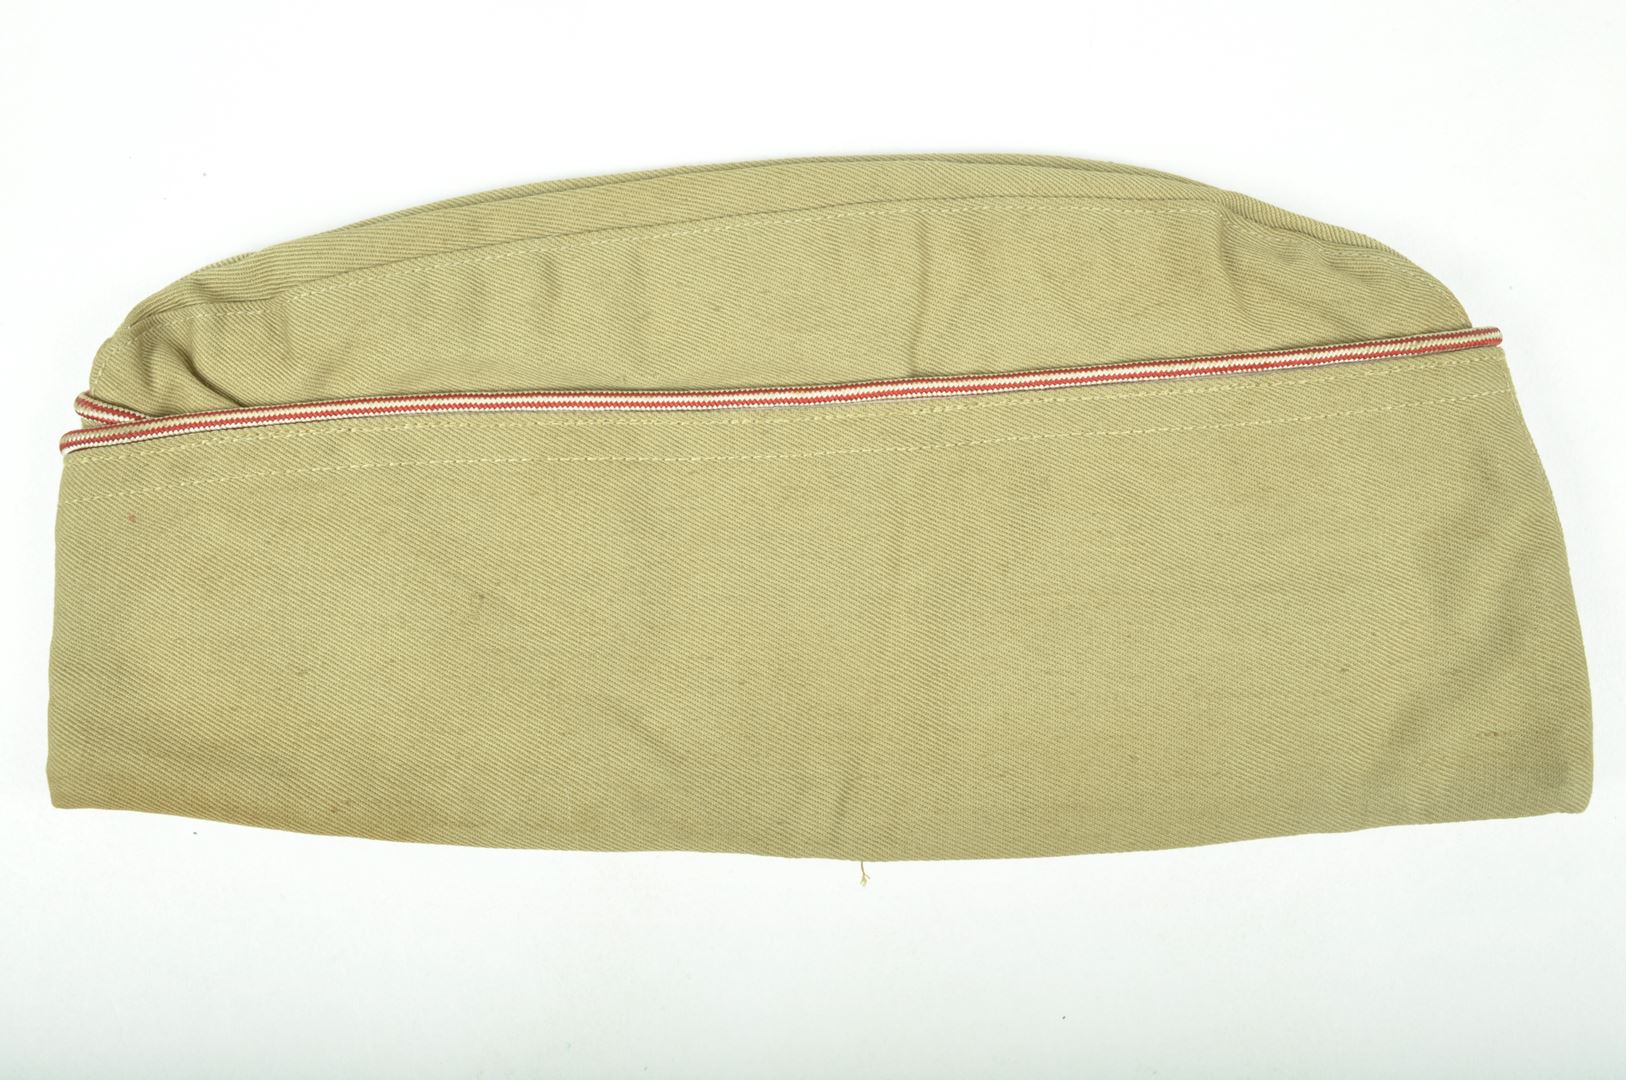 Bonnet de police nominatif daté 1942 / Garrison Cap Corps of Engineers